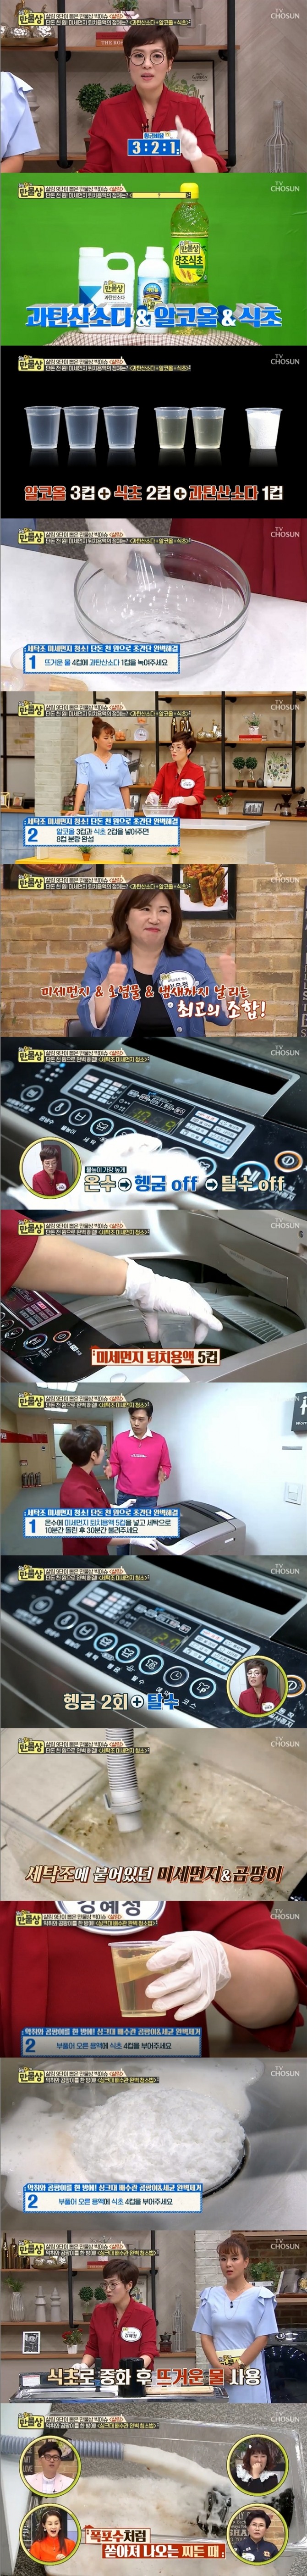 지난 19일 방송된 TV 조선 '살림9단의 만물상' 290회에서는 강혜정씨가 출연, 싱크대와 세탁조 청소비법을 공개했다. 사진=TV 조선 방송 캡처